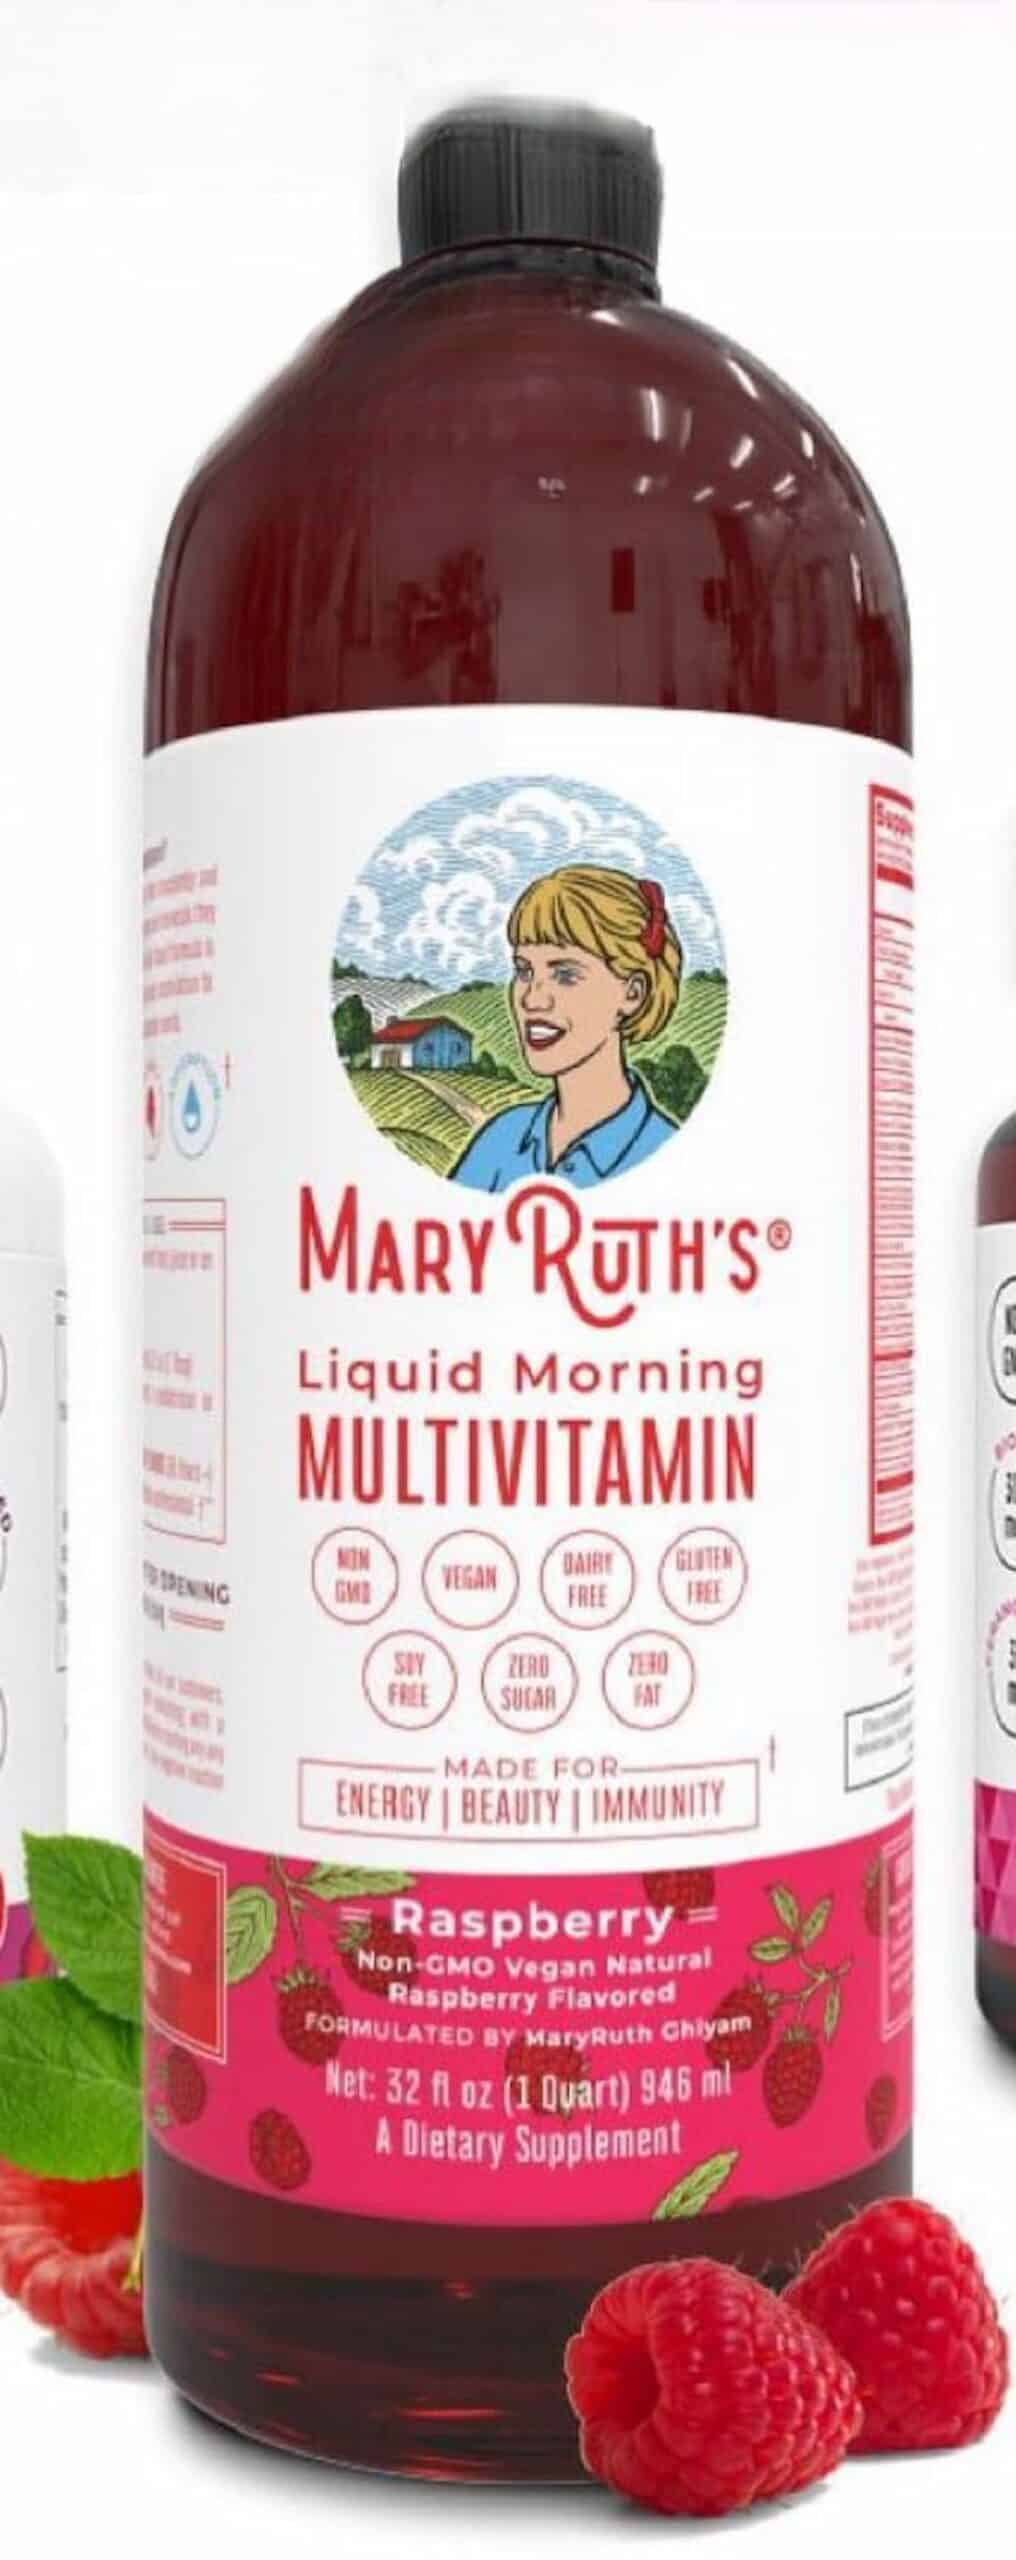 A bottle of MaryRuth's vegan liquid morning multivitamin.